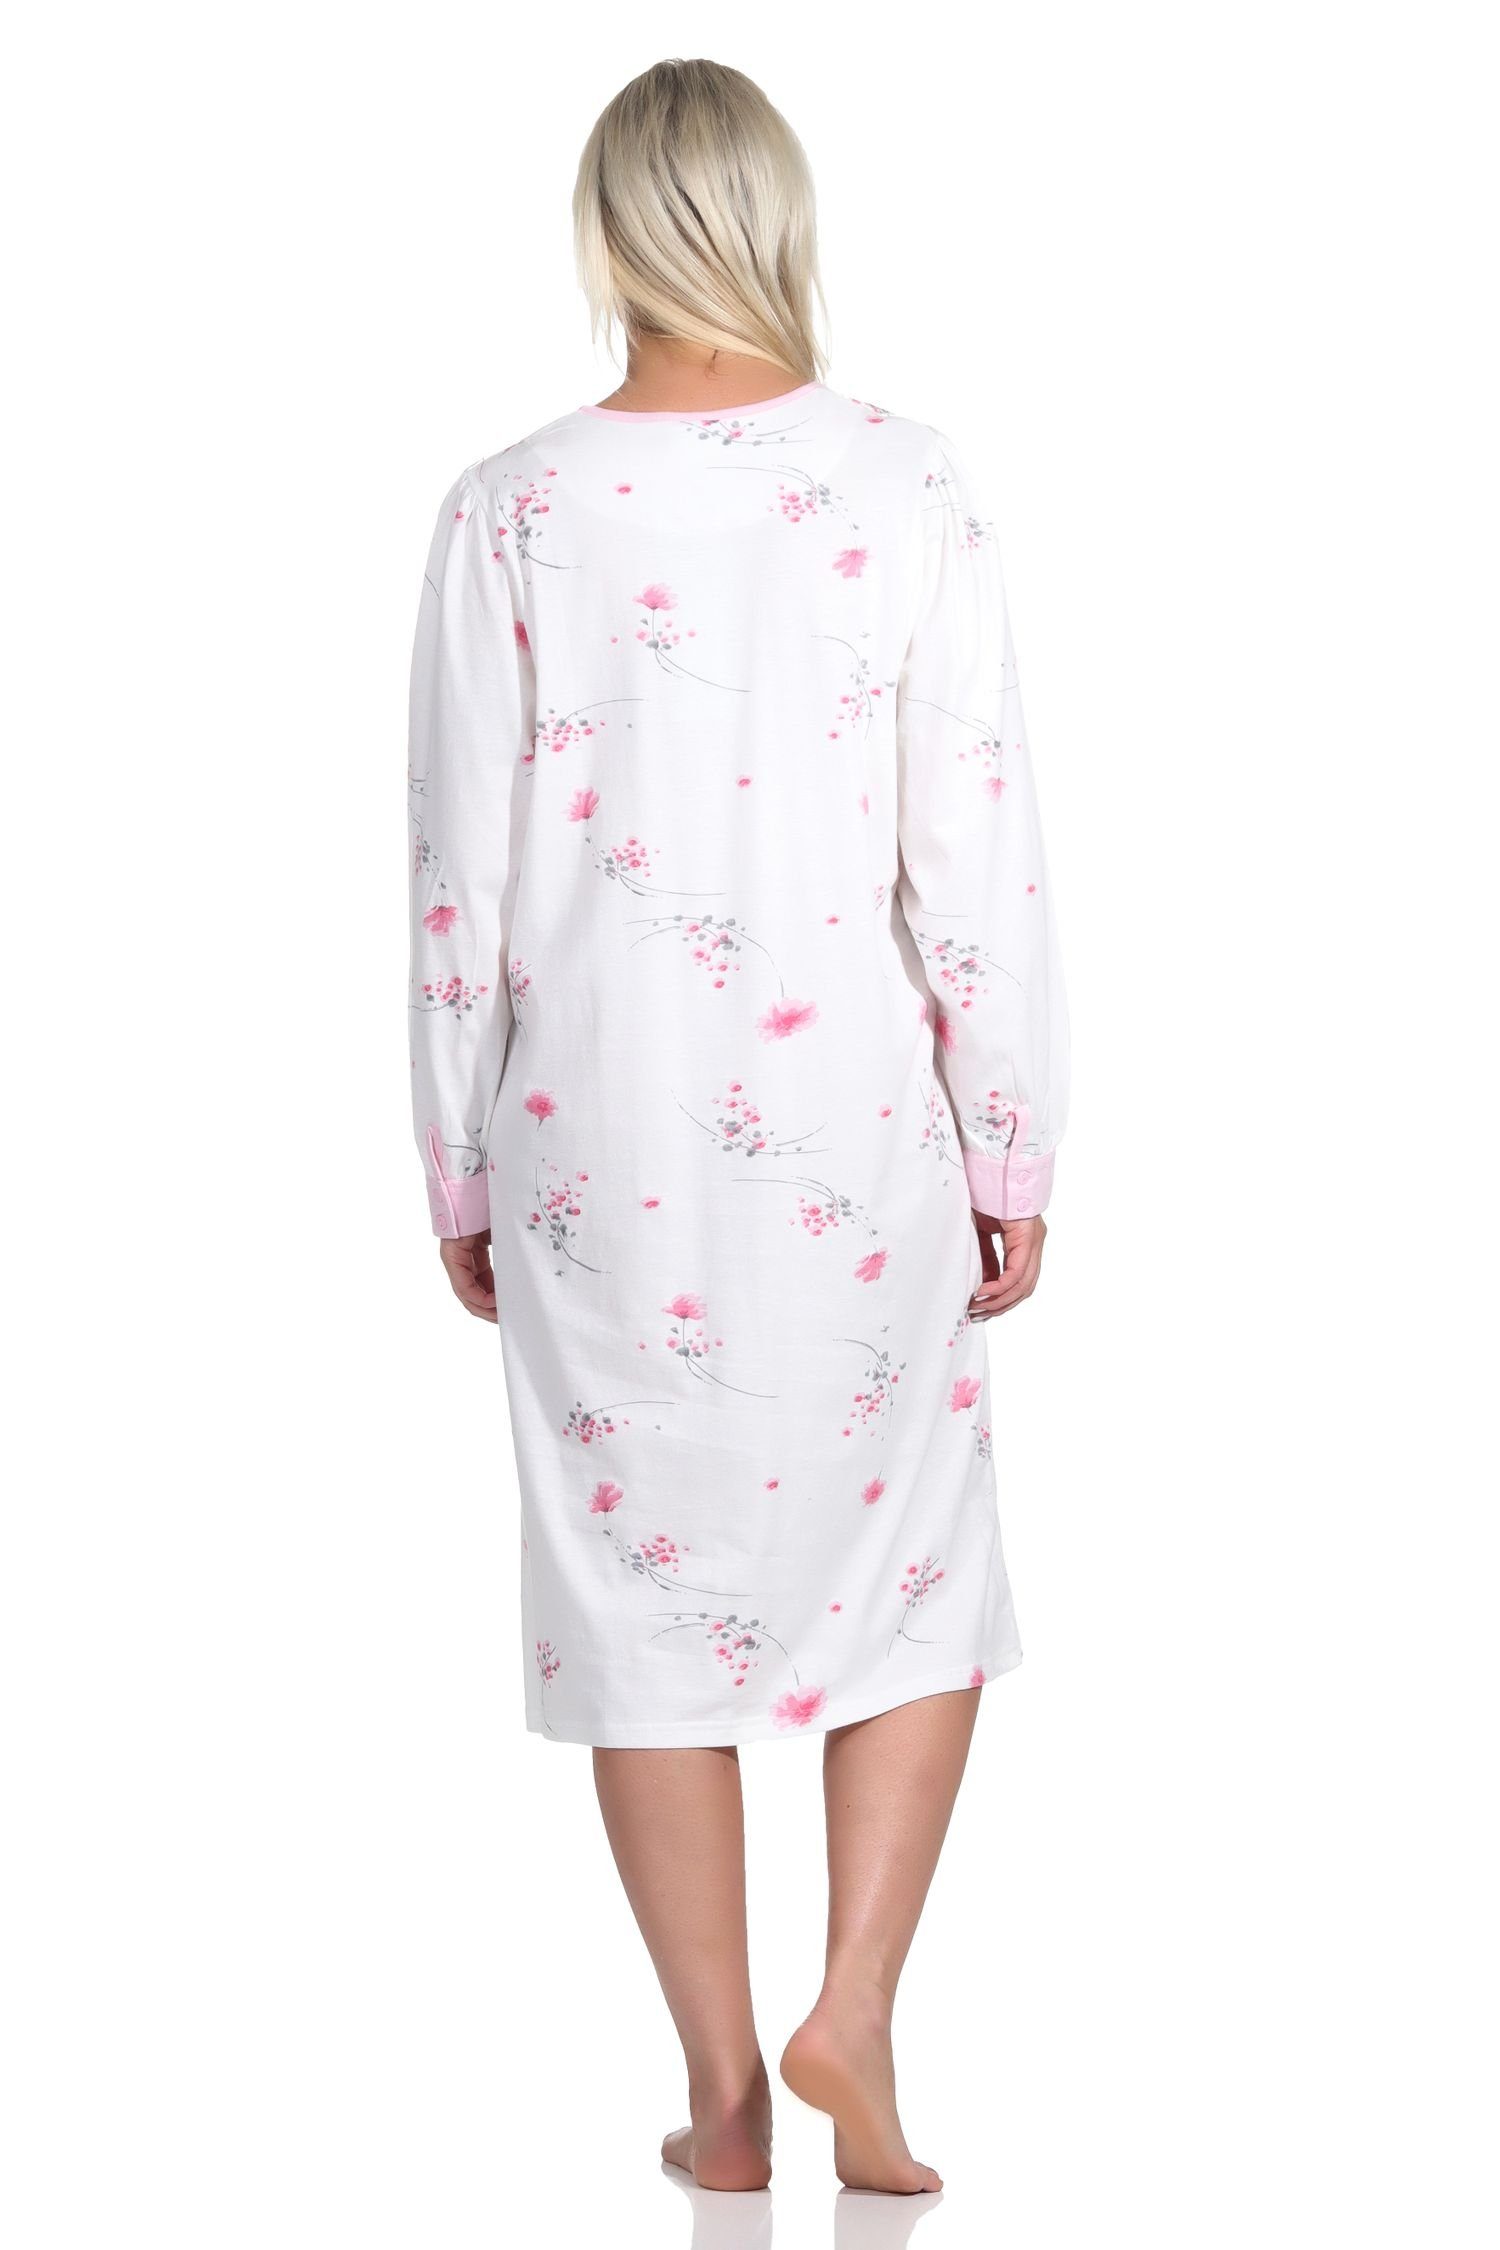 Normann Nachthemd am Frauliches langarm Hals mit rosa Damen Knopfleiste Nachthemd